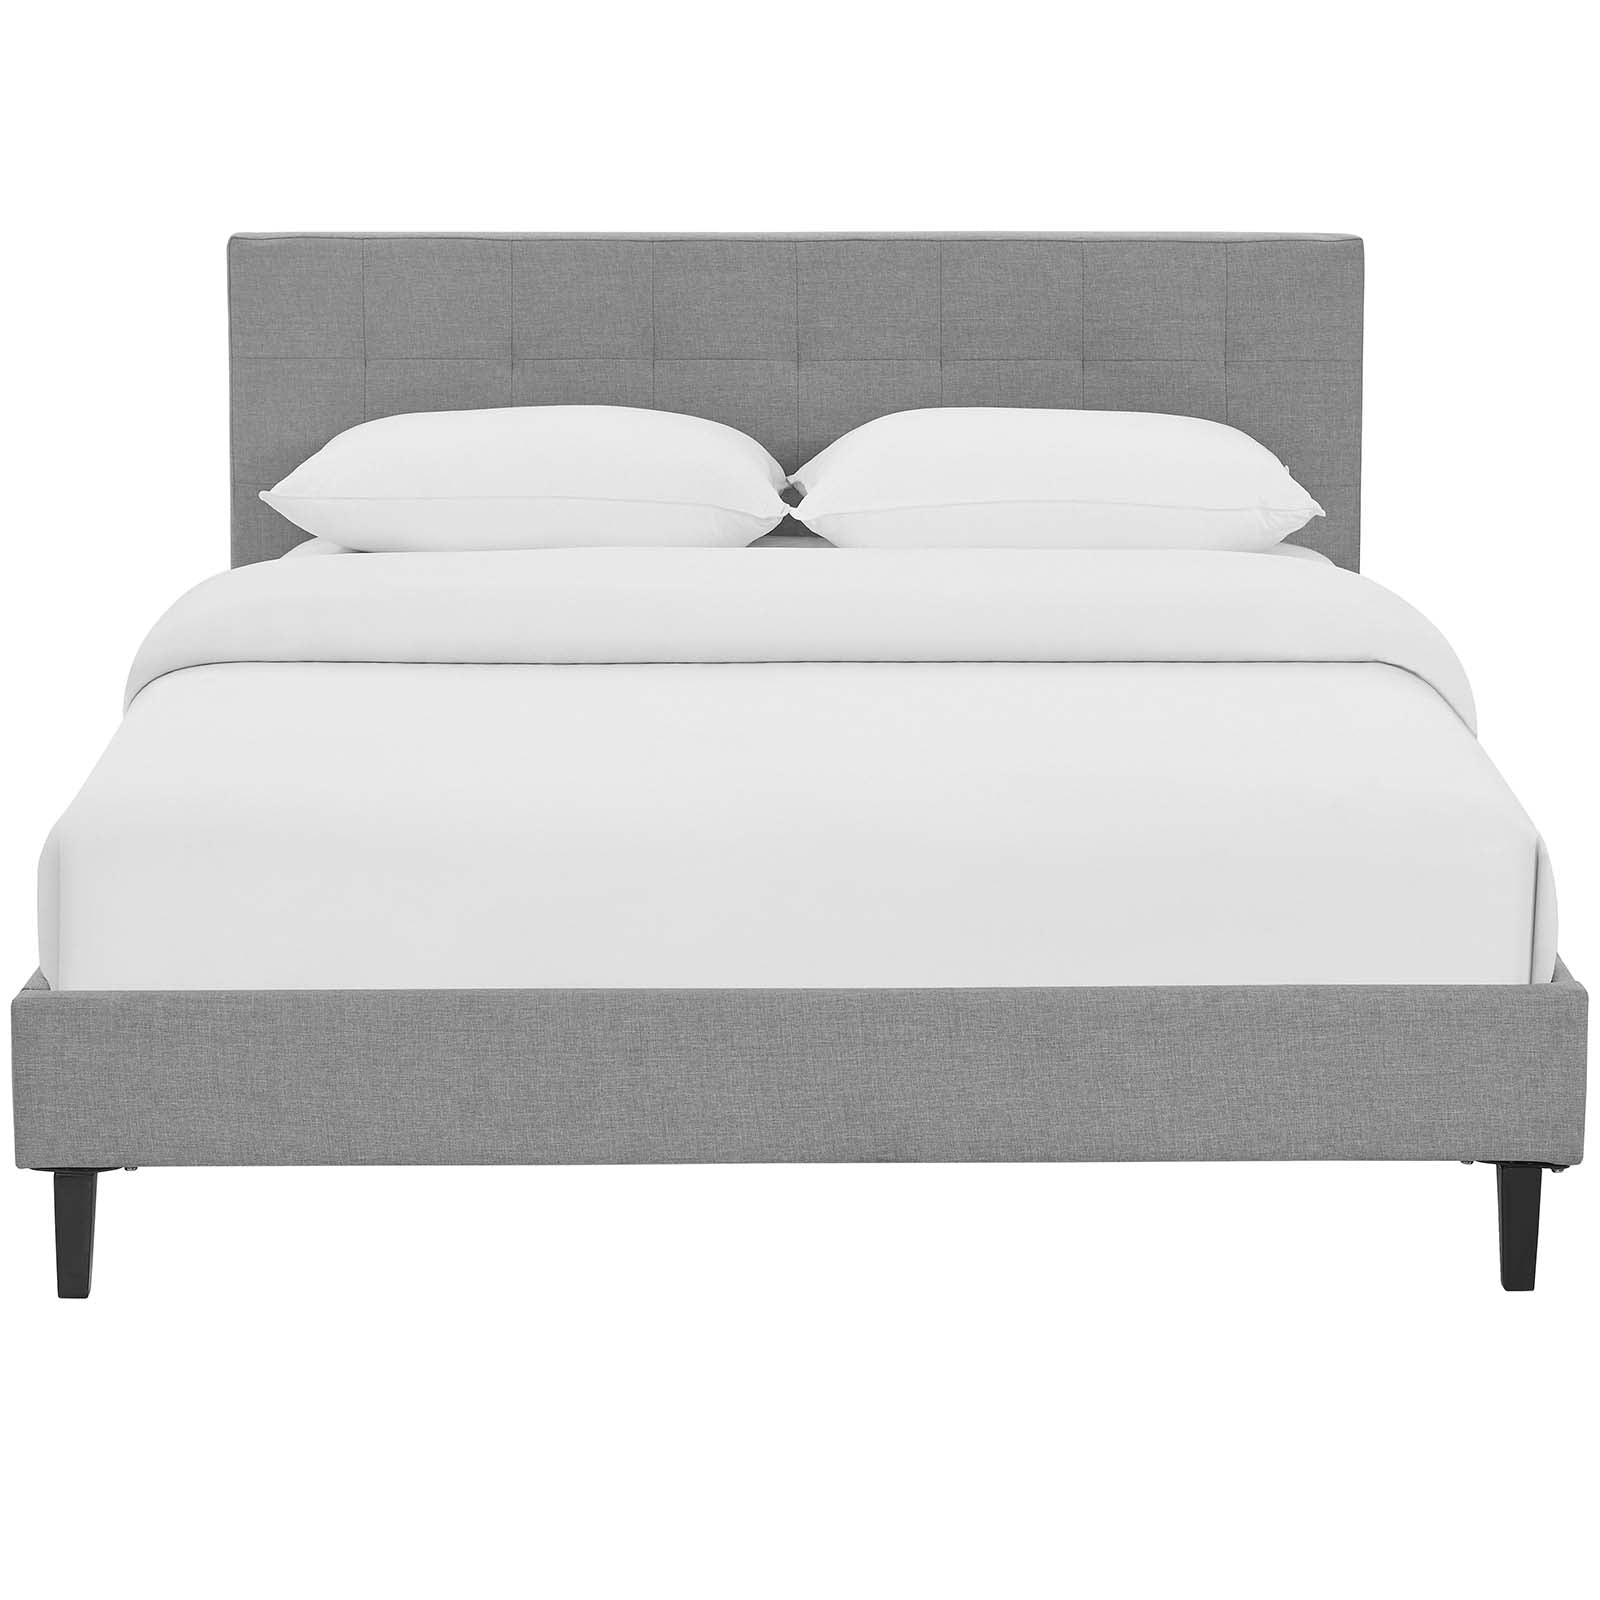 Modway Beds - Linnea Full Bed Light Gray